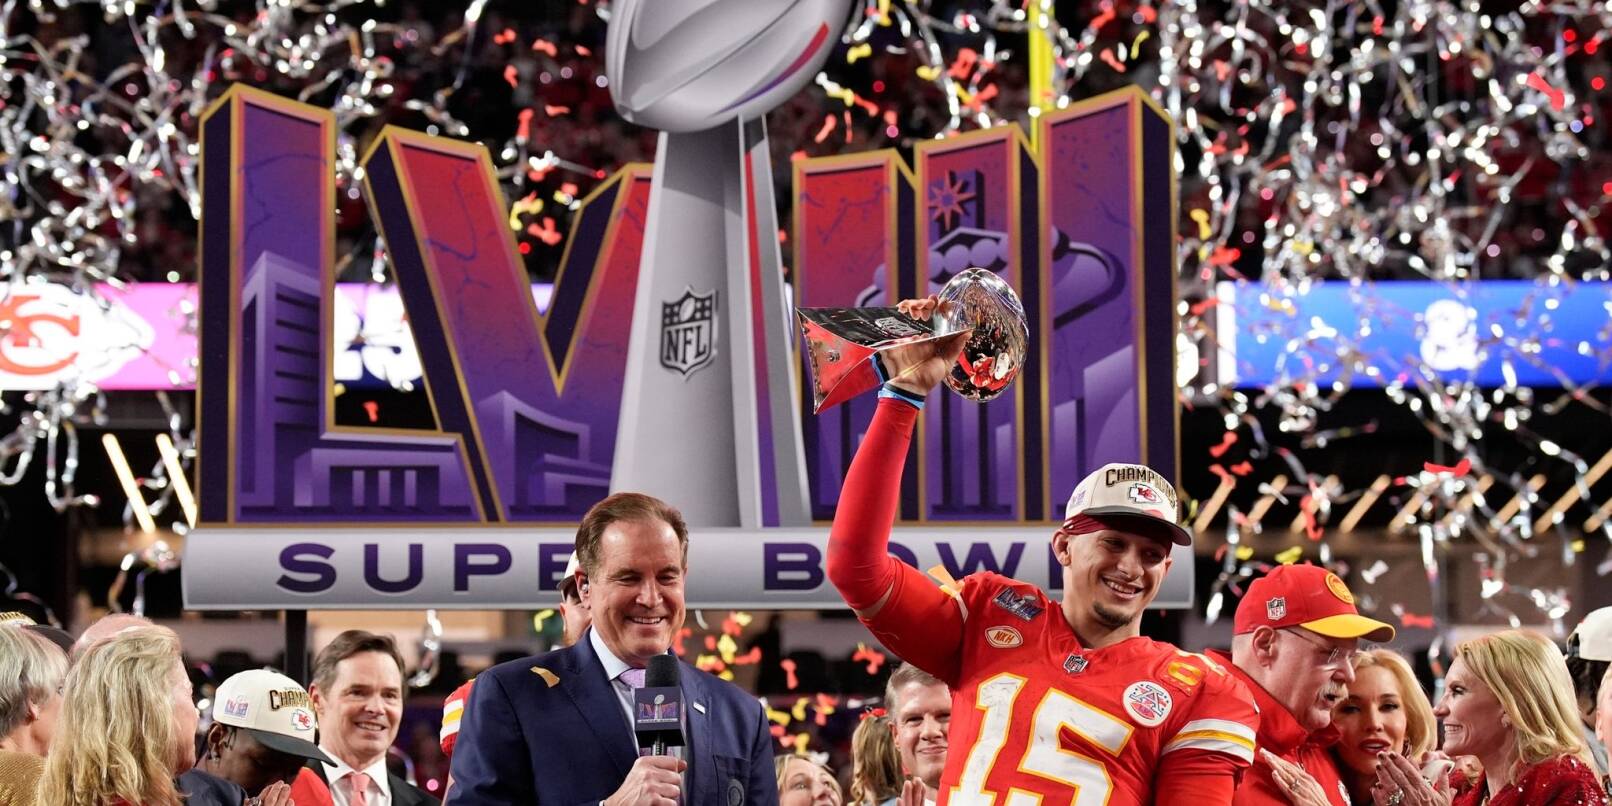 Der Super Bowl zwischen den Kansas City Chiefs und den San Francisco 49ers brachte einen TV-Rekord.